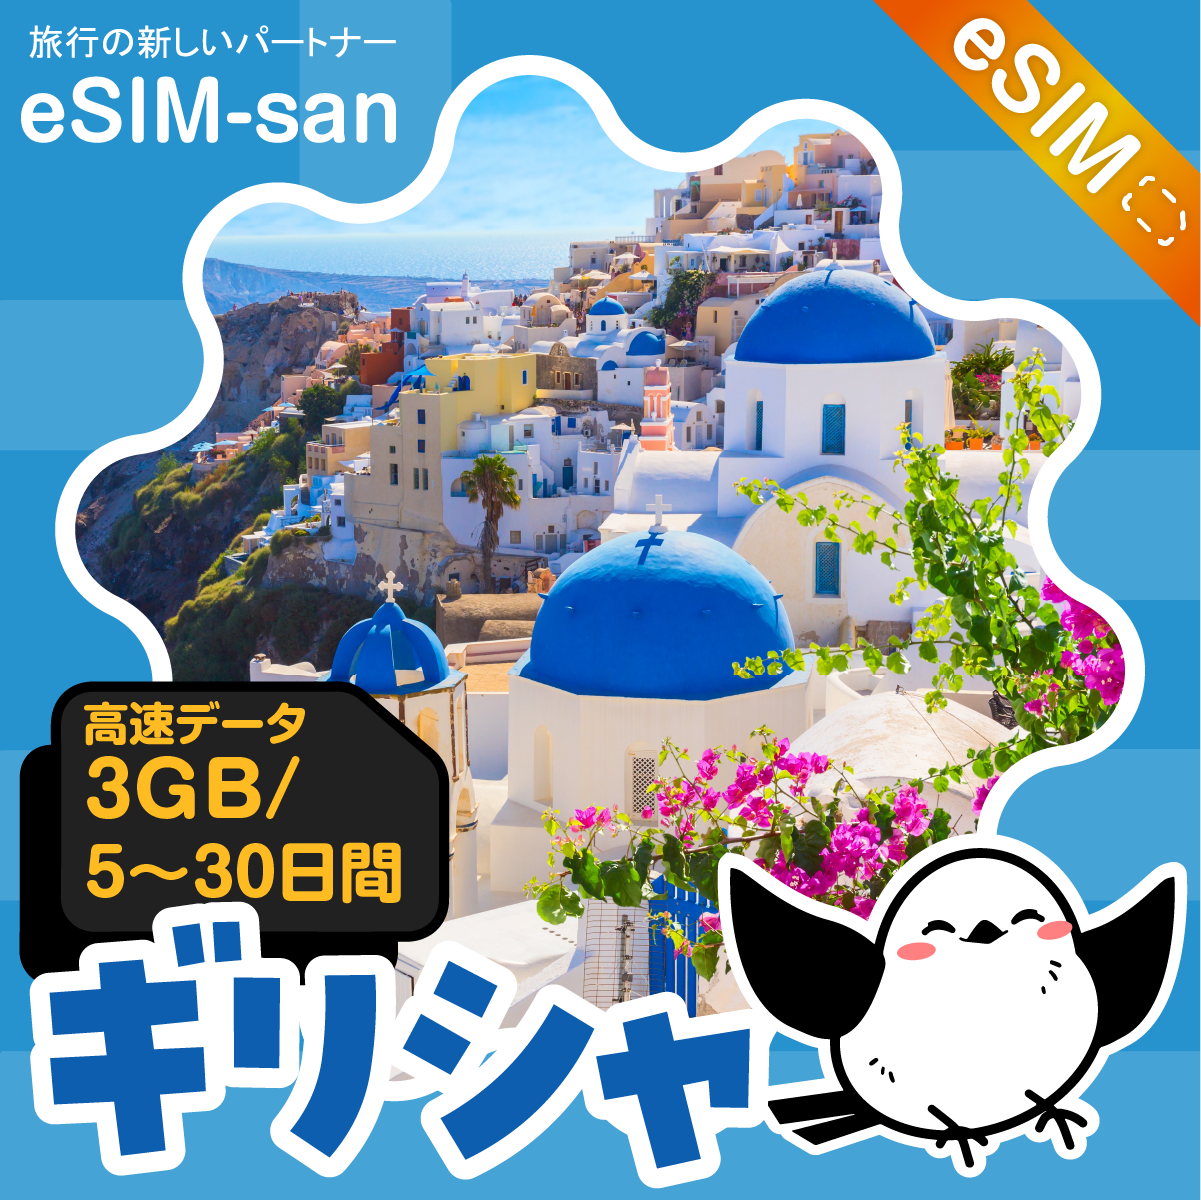 ギリシャeSIMの3GB/dayプラン画像_eSIM-san